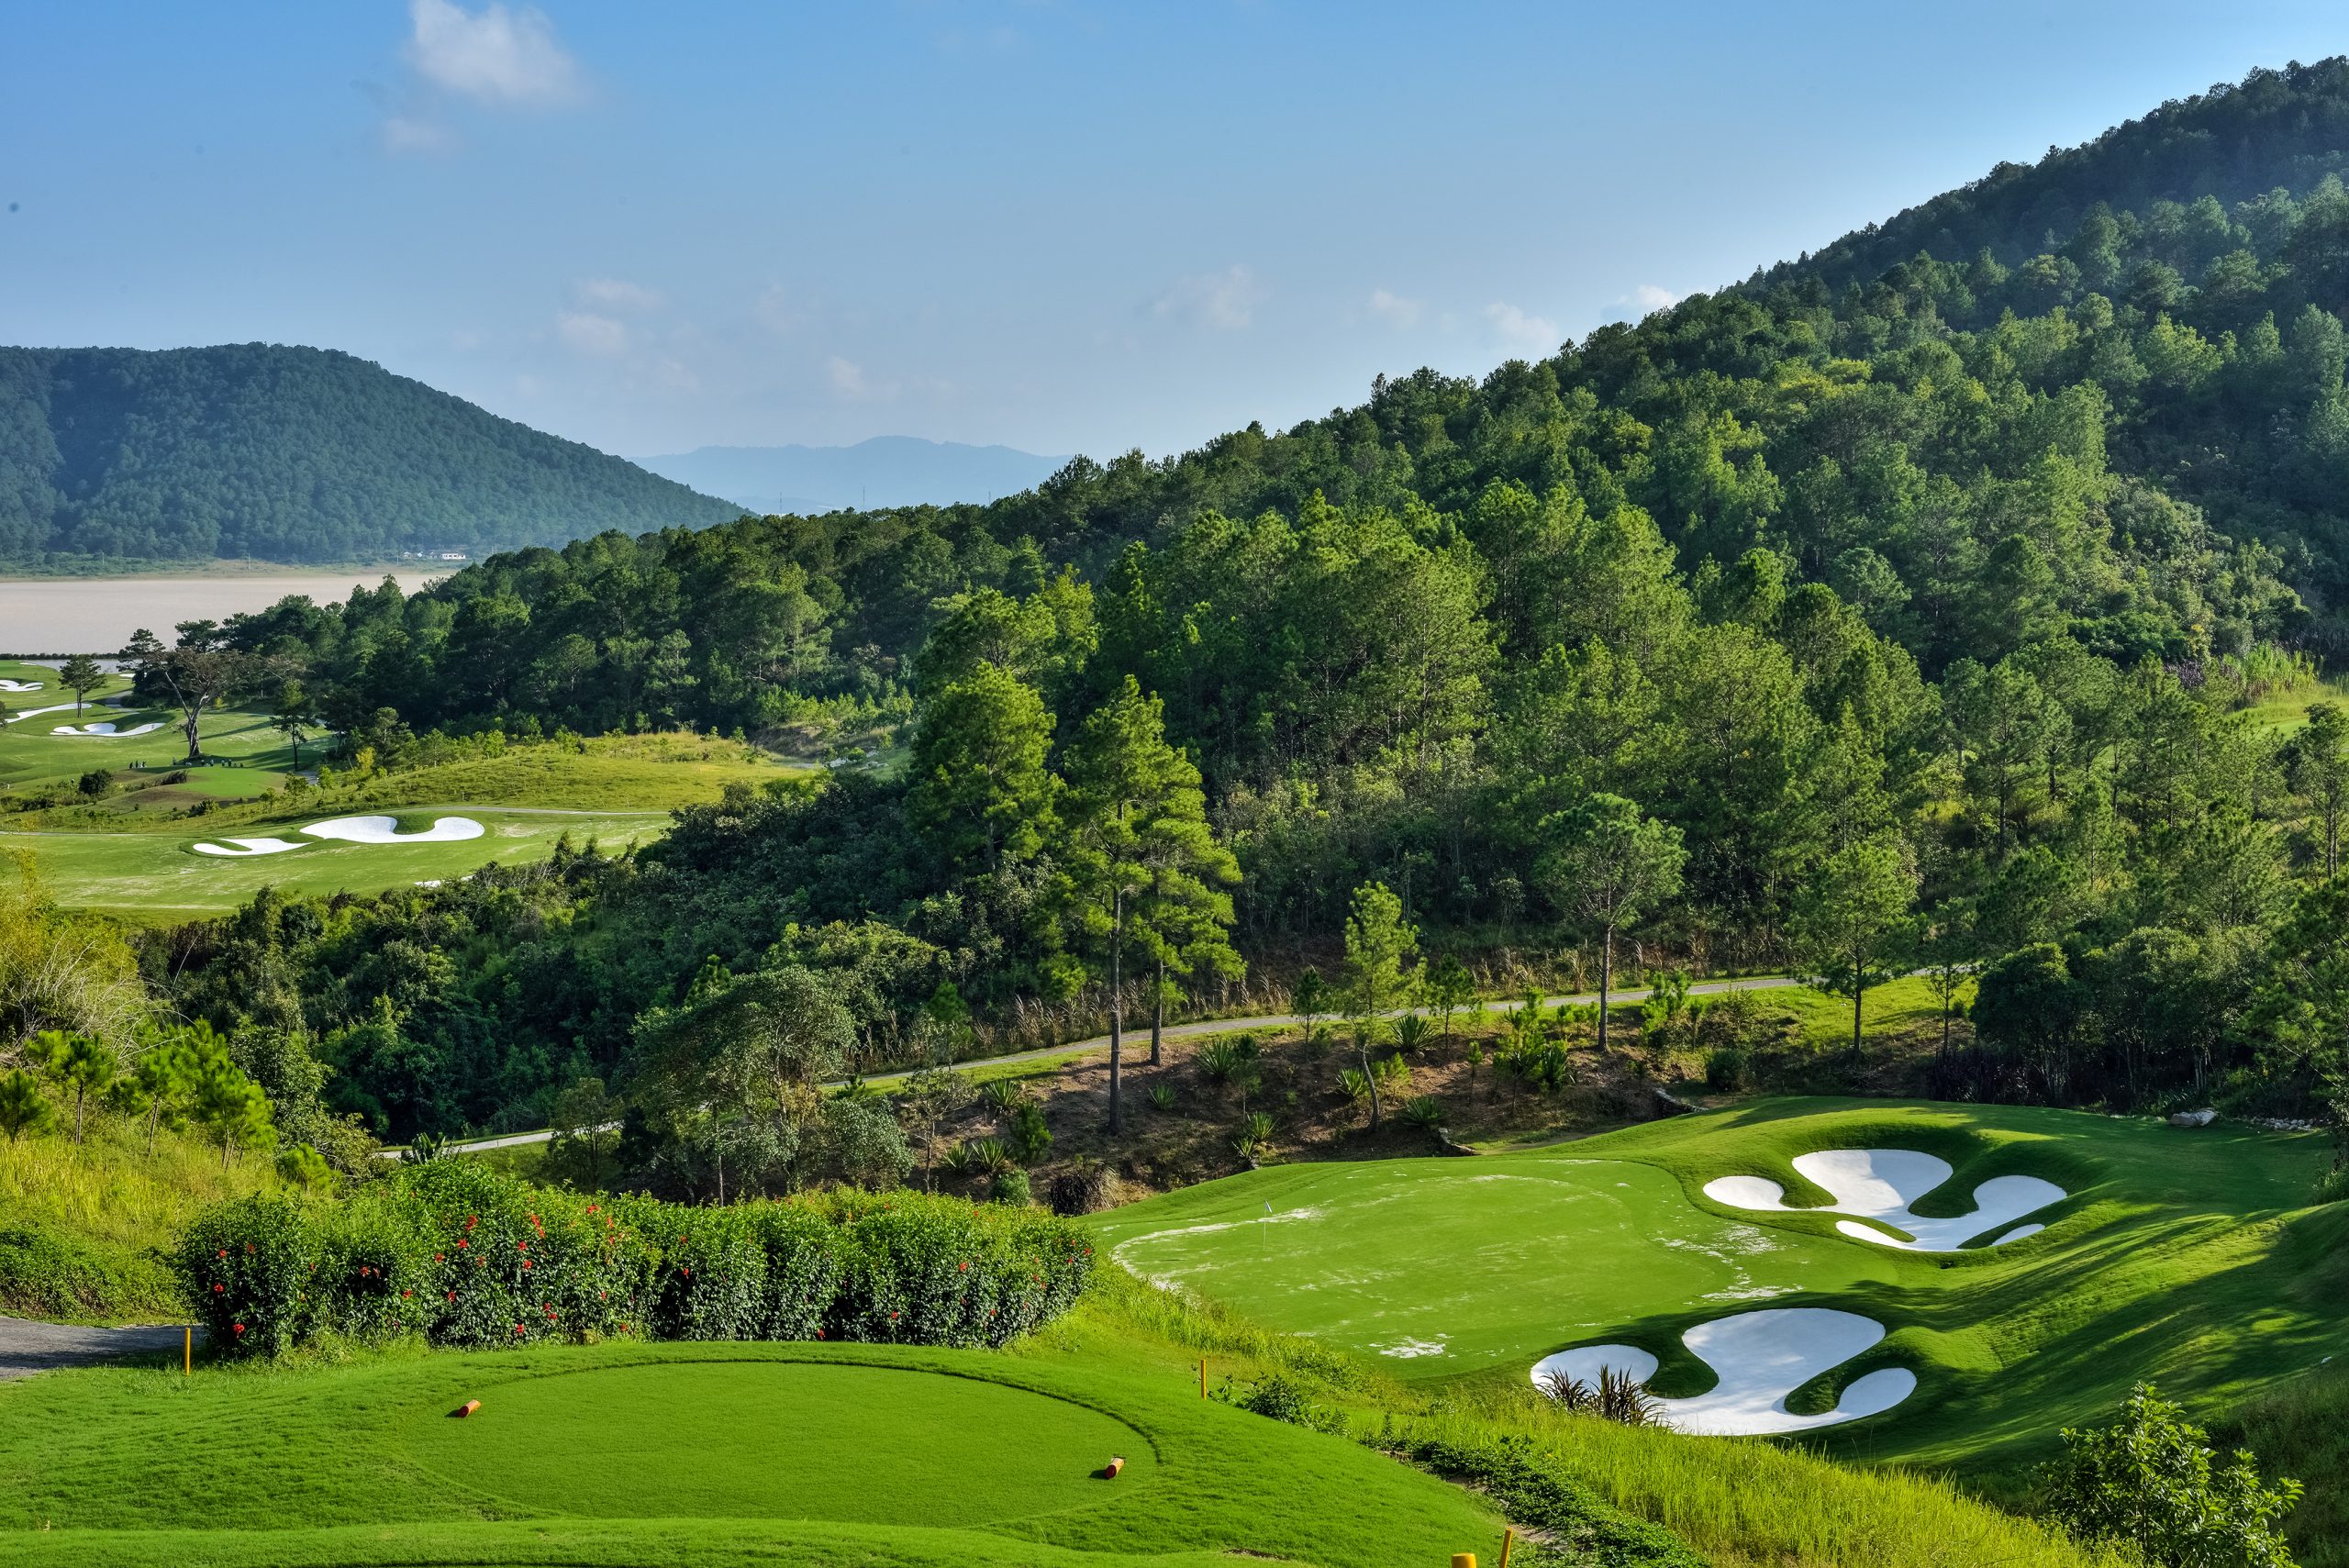 Tỉnh Bắc Giang quy hoạch 13 dự án sân golf